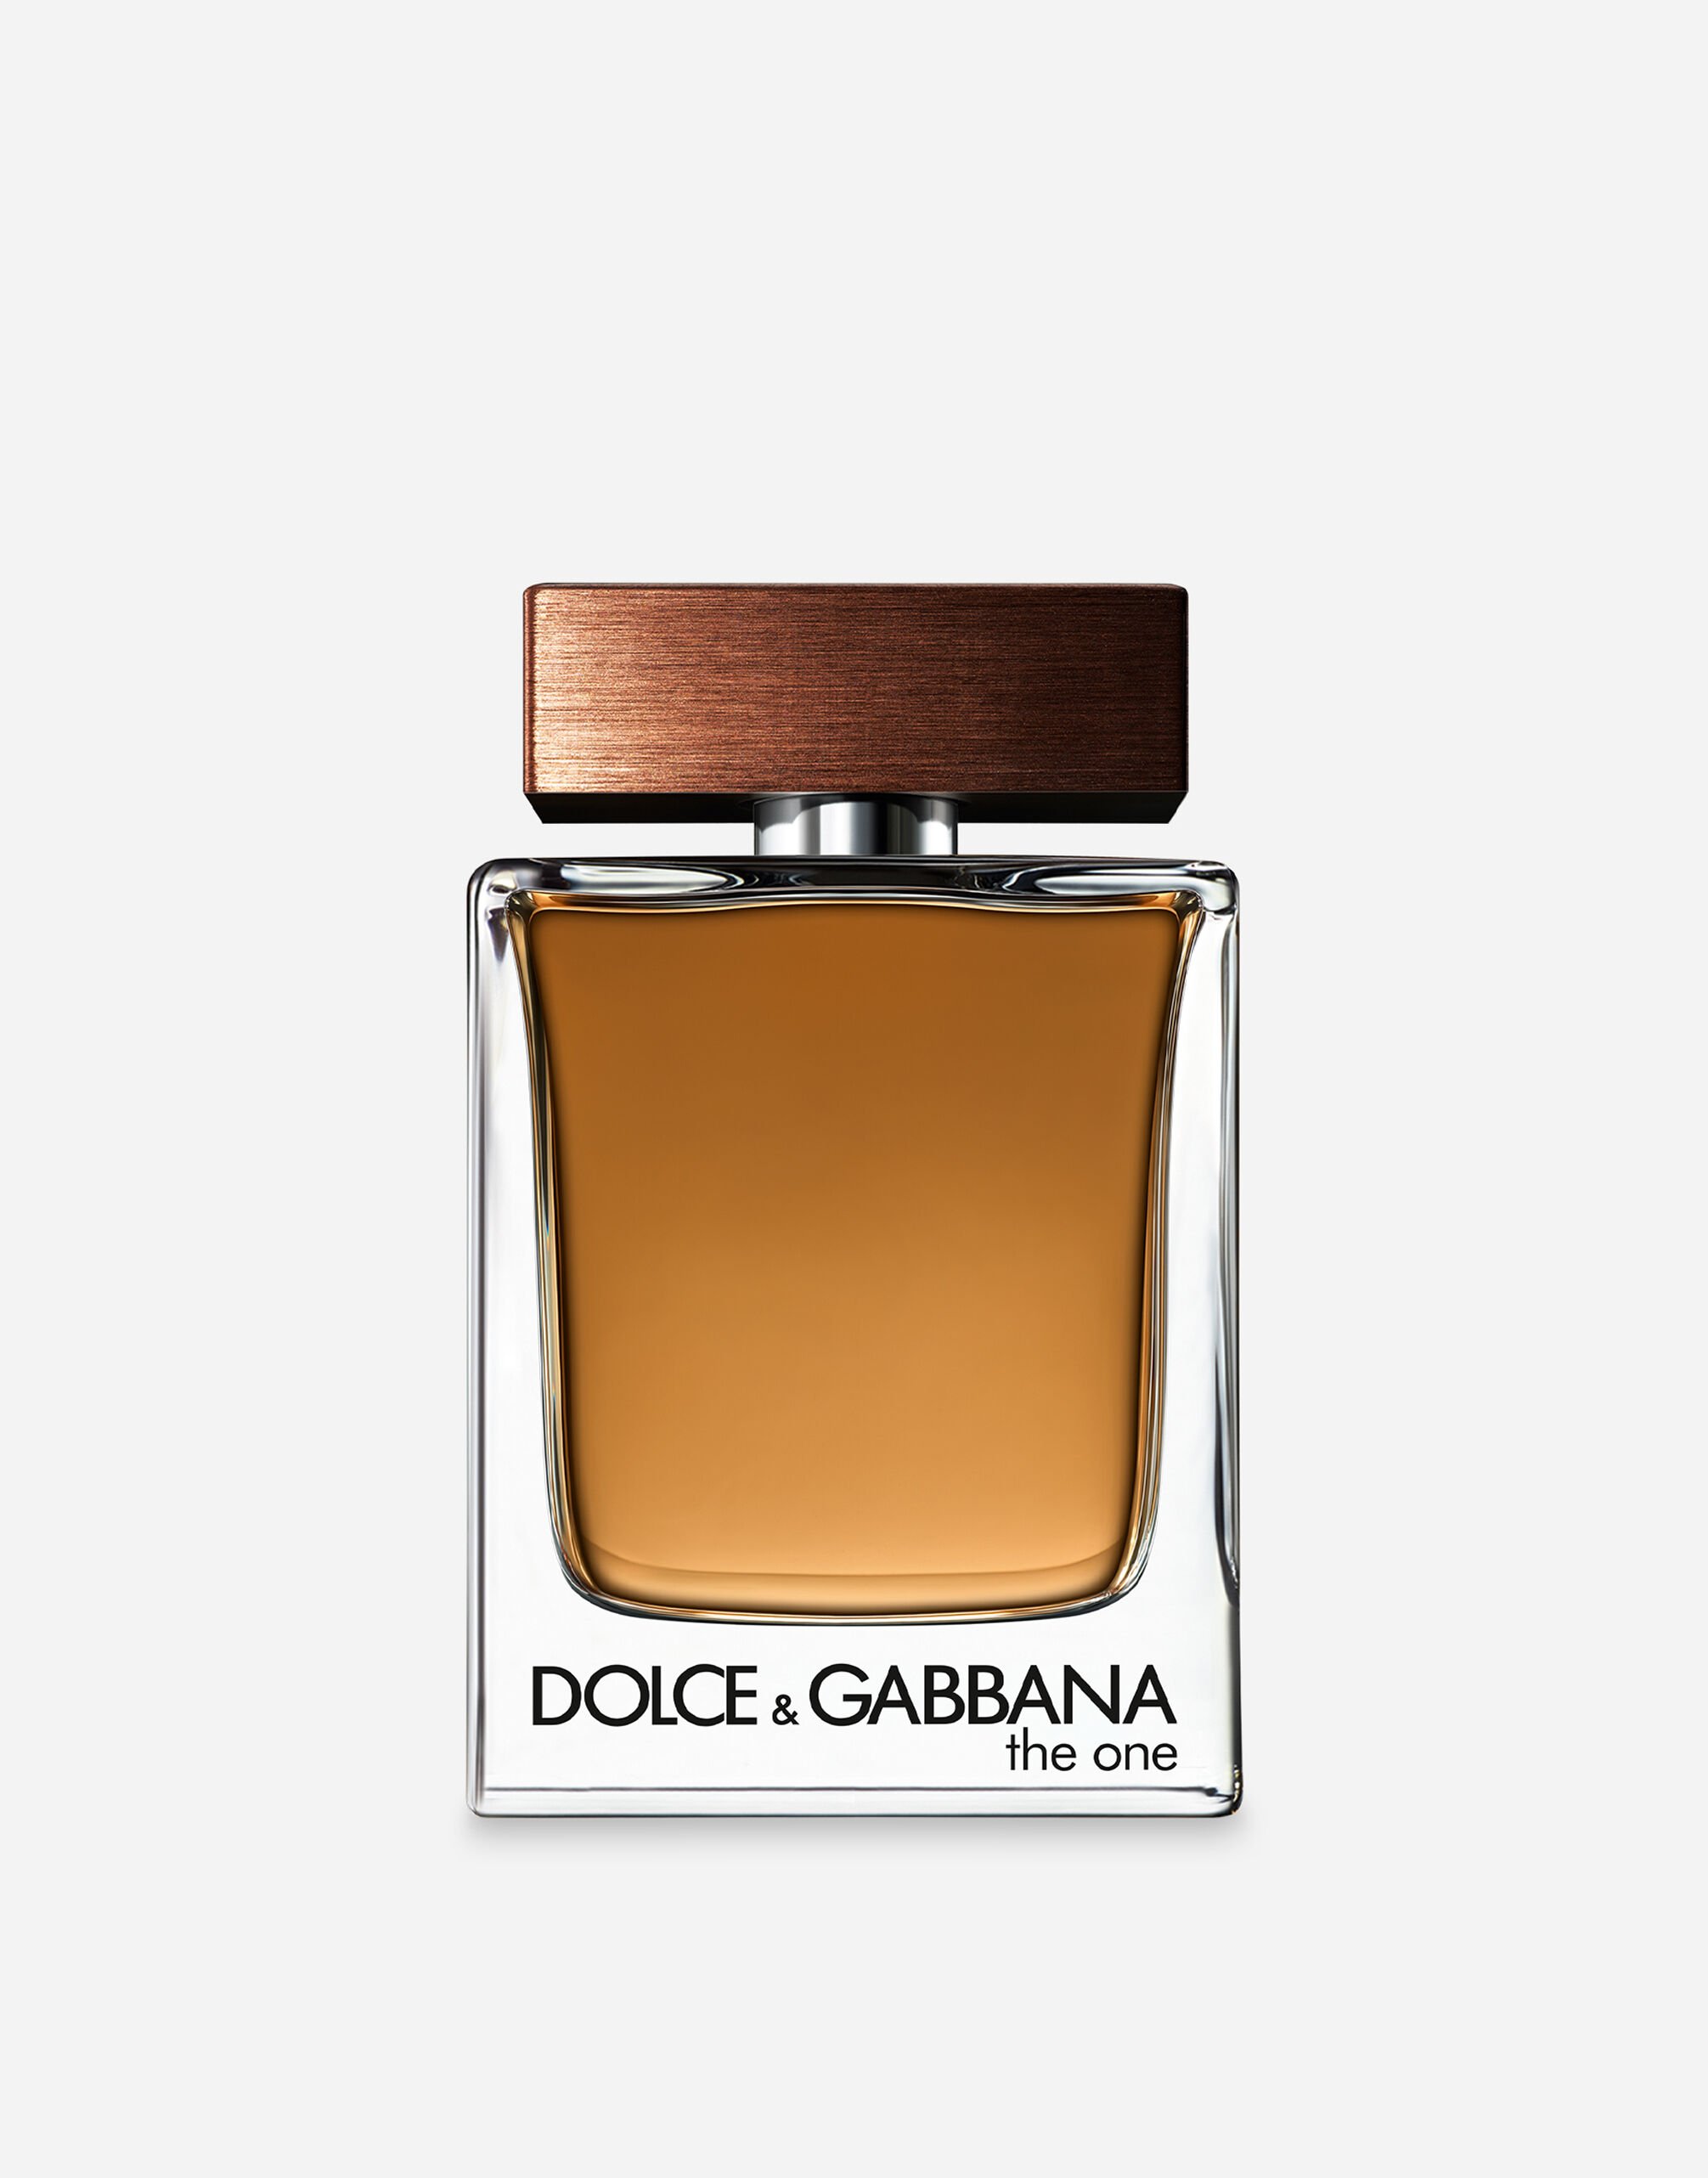 Dolce & Gabbana The One for Men Eau de Toilette - VT0063VT000